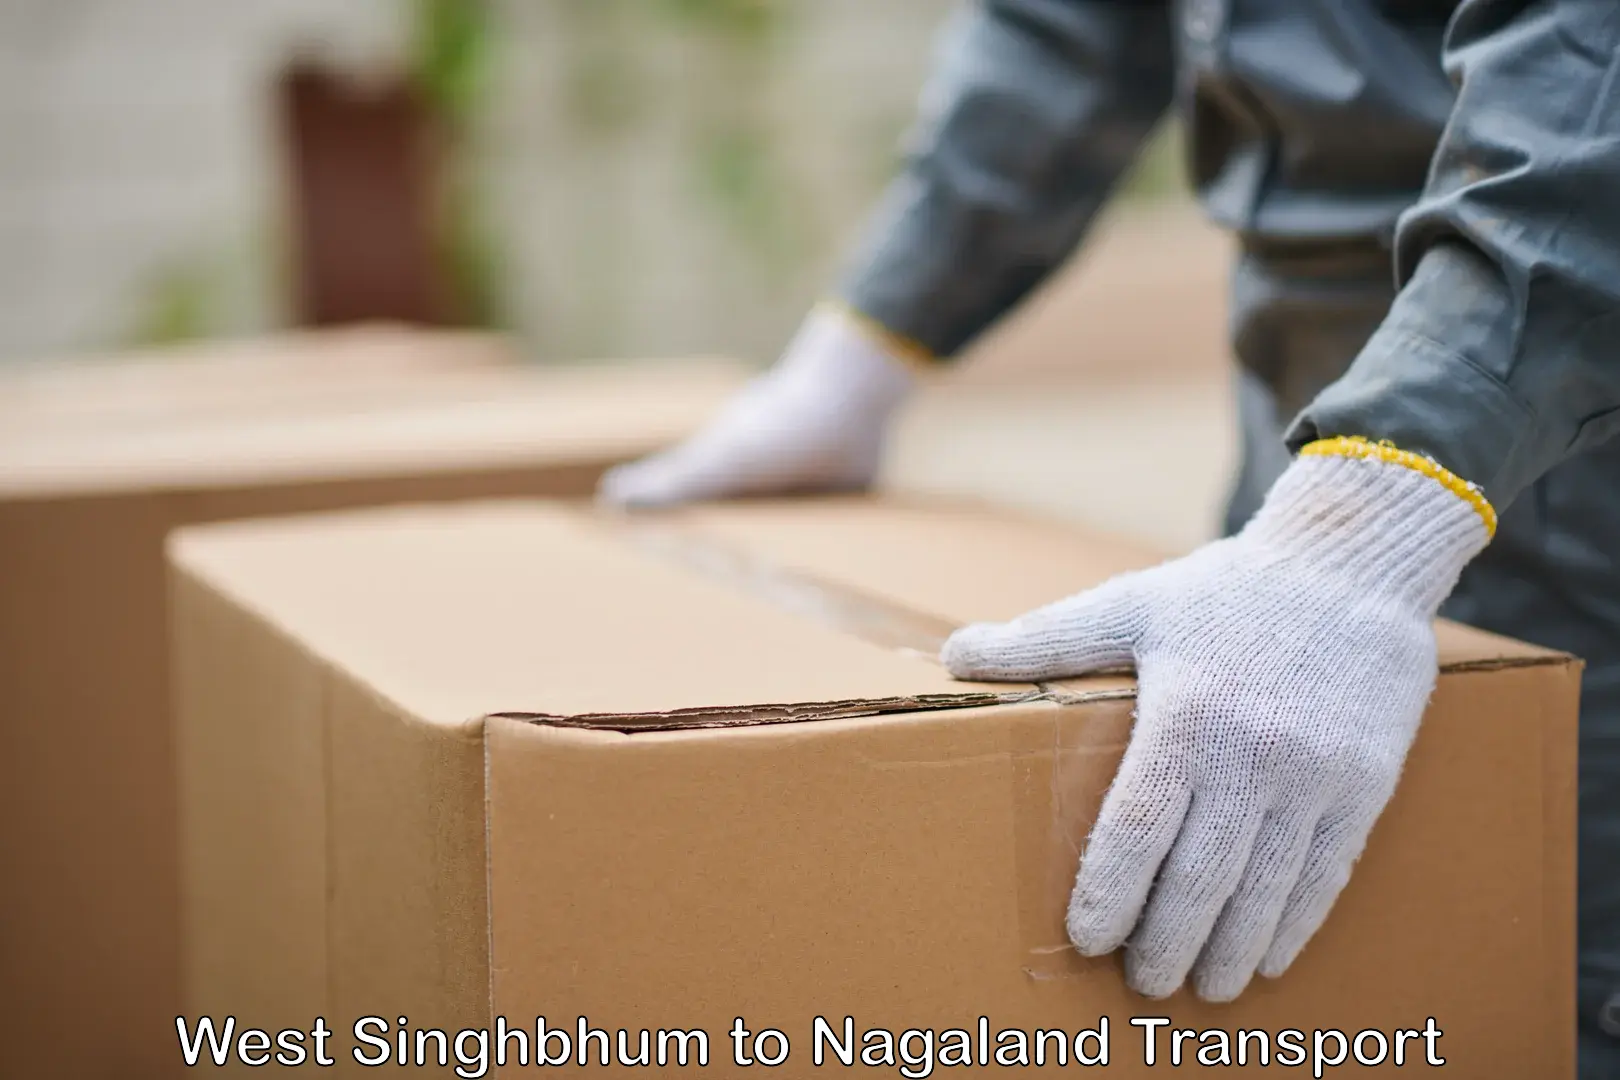 Online transport service West Singhbhum to Nagaland